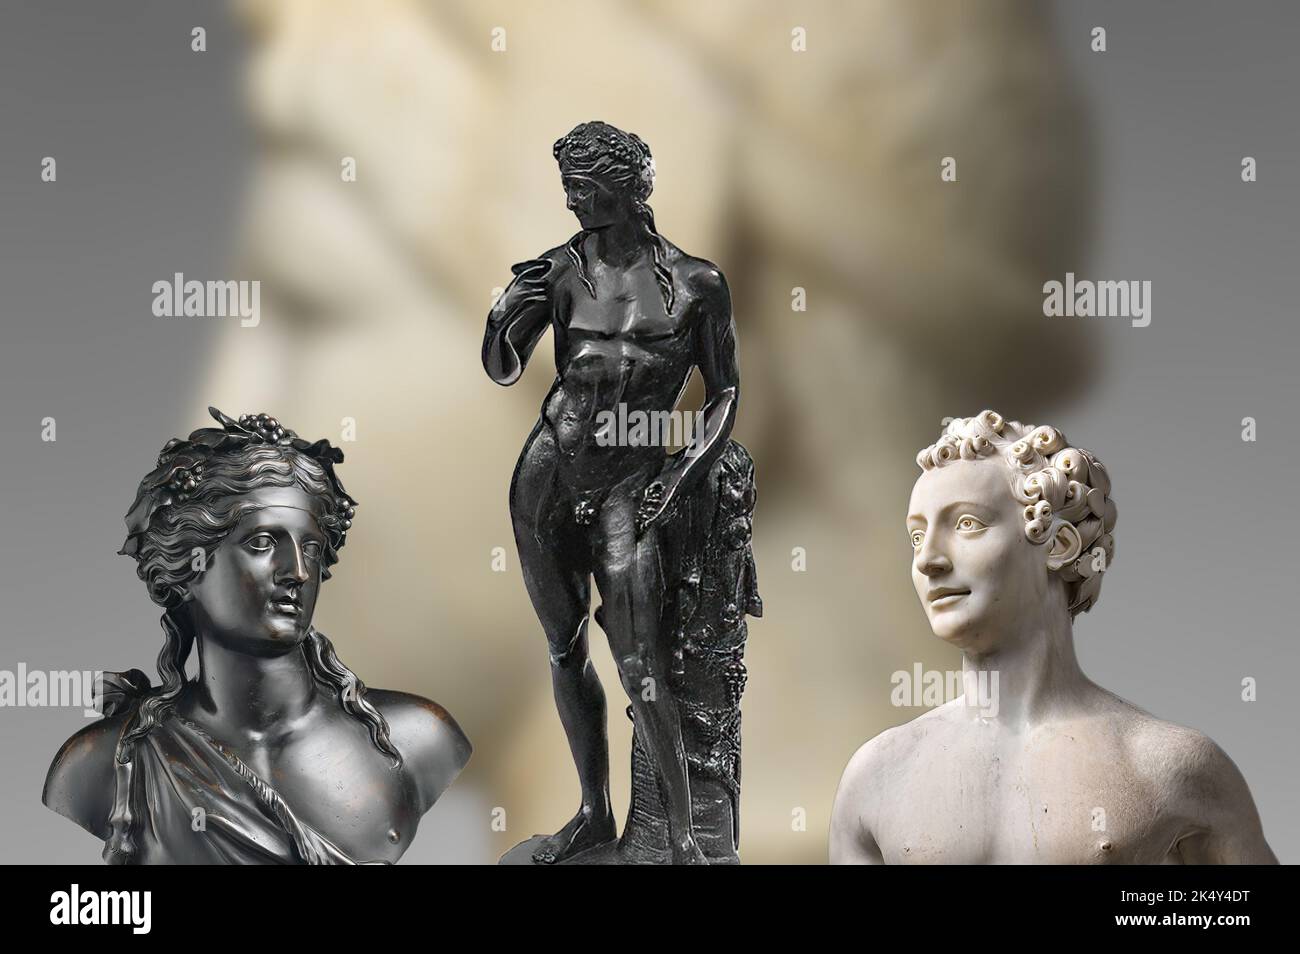 Darstellung authentischer Statuen des antiken Roms von Bacchus, dem gott des Weins und Festlichkeiten. Stockfoto